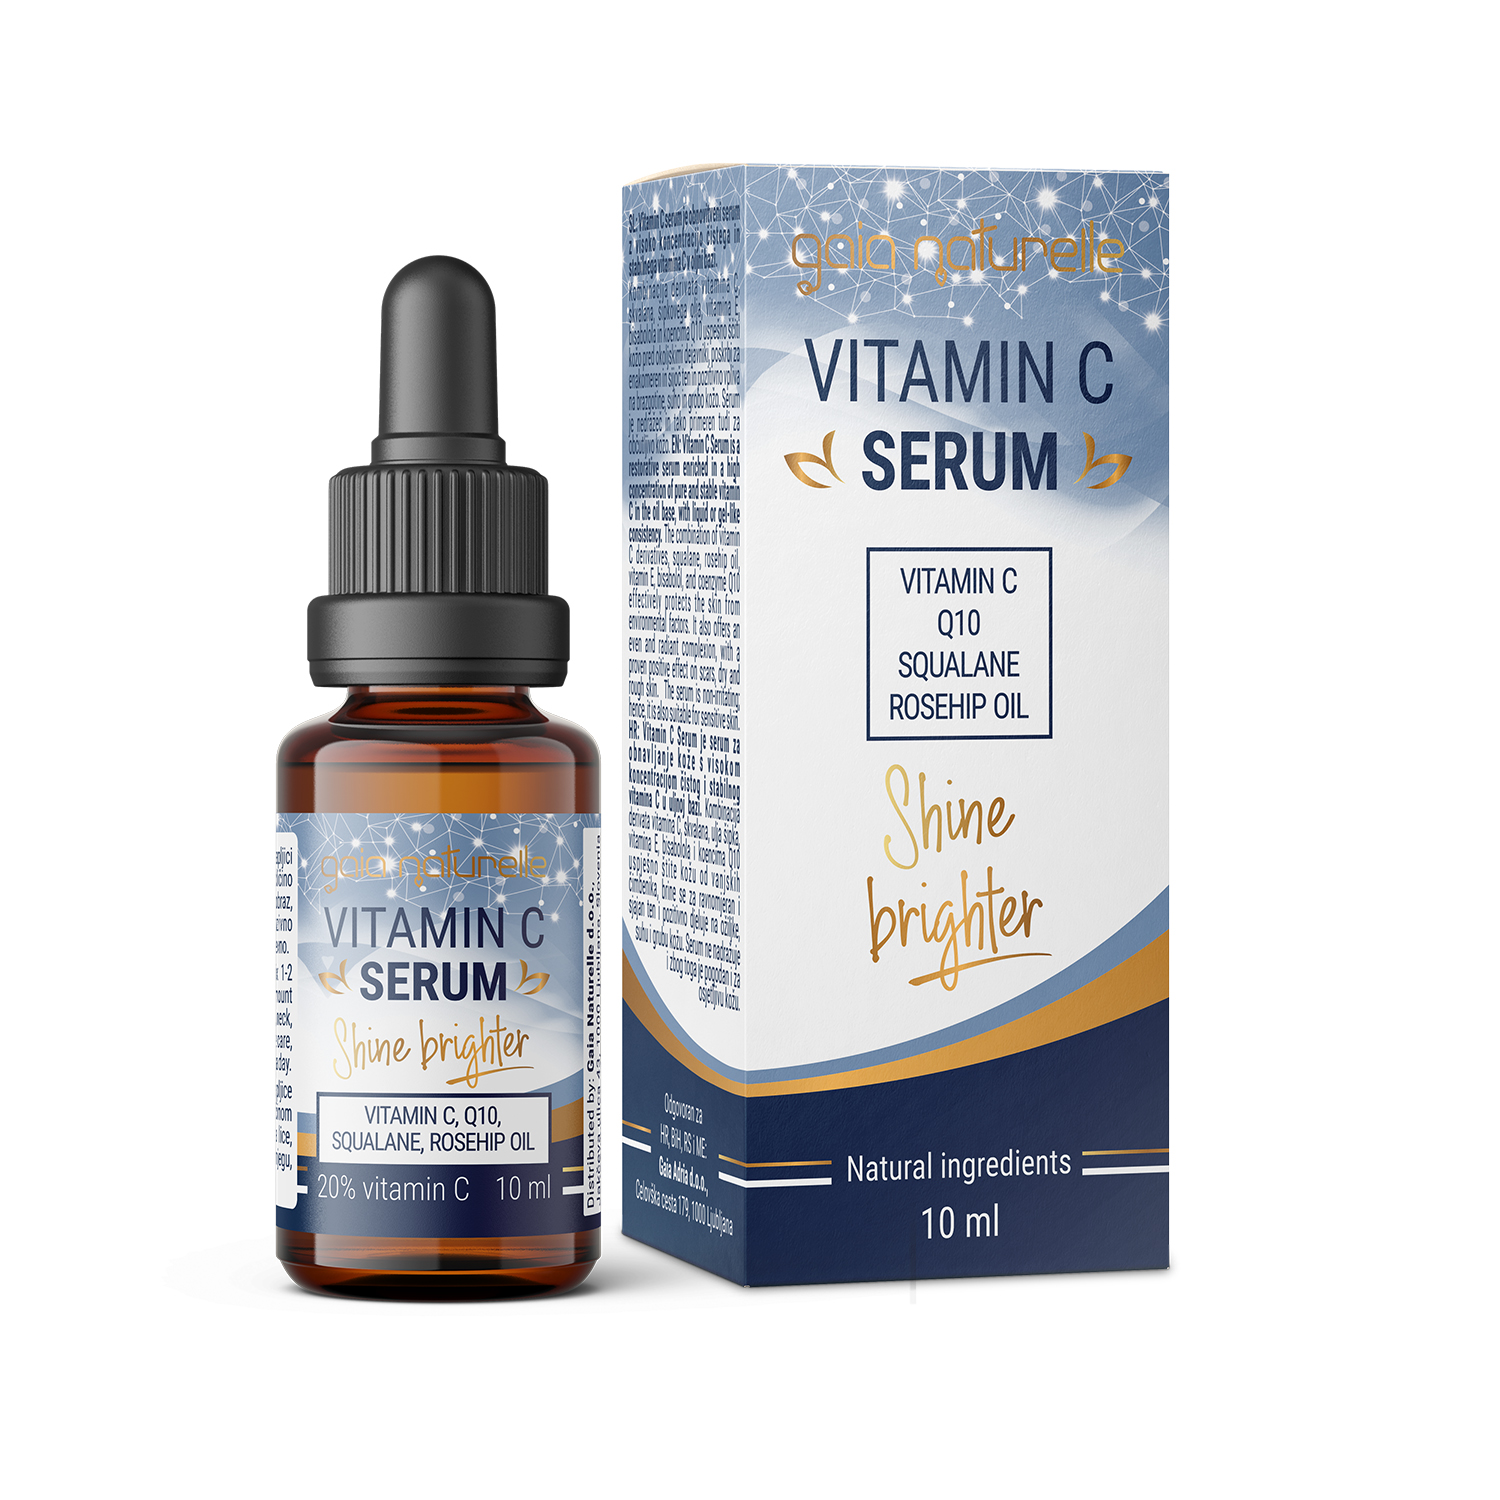 Gaia Naturelle Vitamin C serum